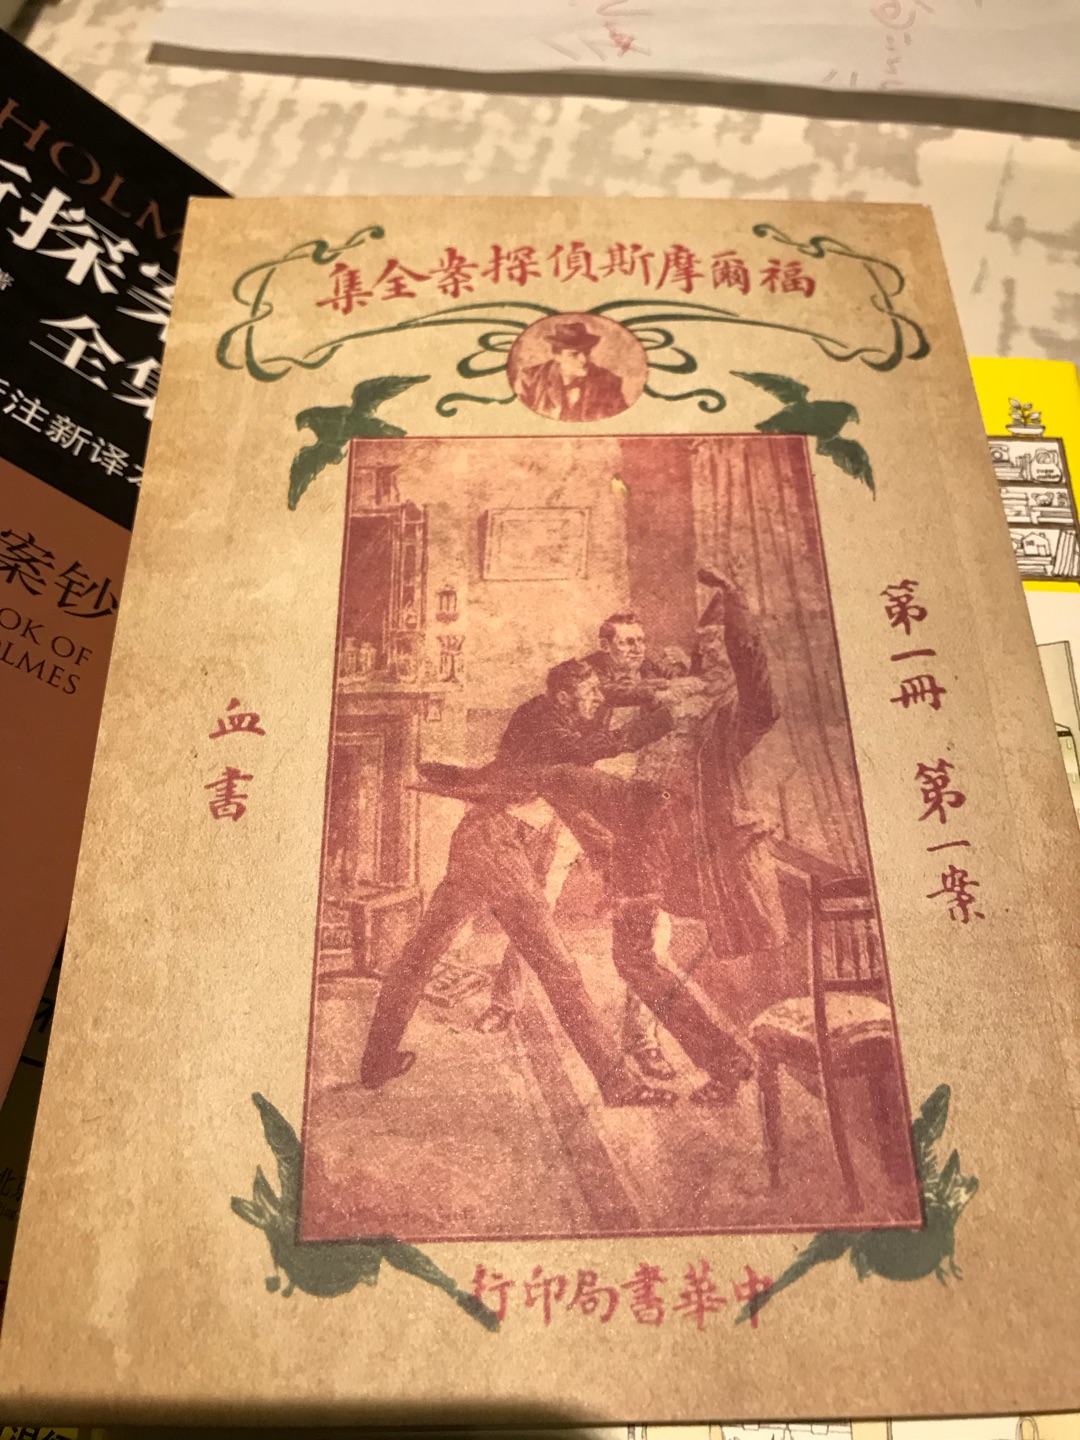 中华书局版的福尔摩斯，心仪已久，活动入手很实惠，还送了民国版的福尔摩斯，很有意思